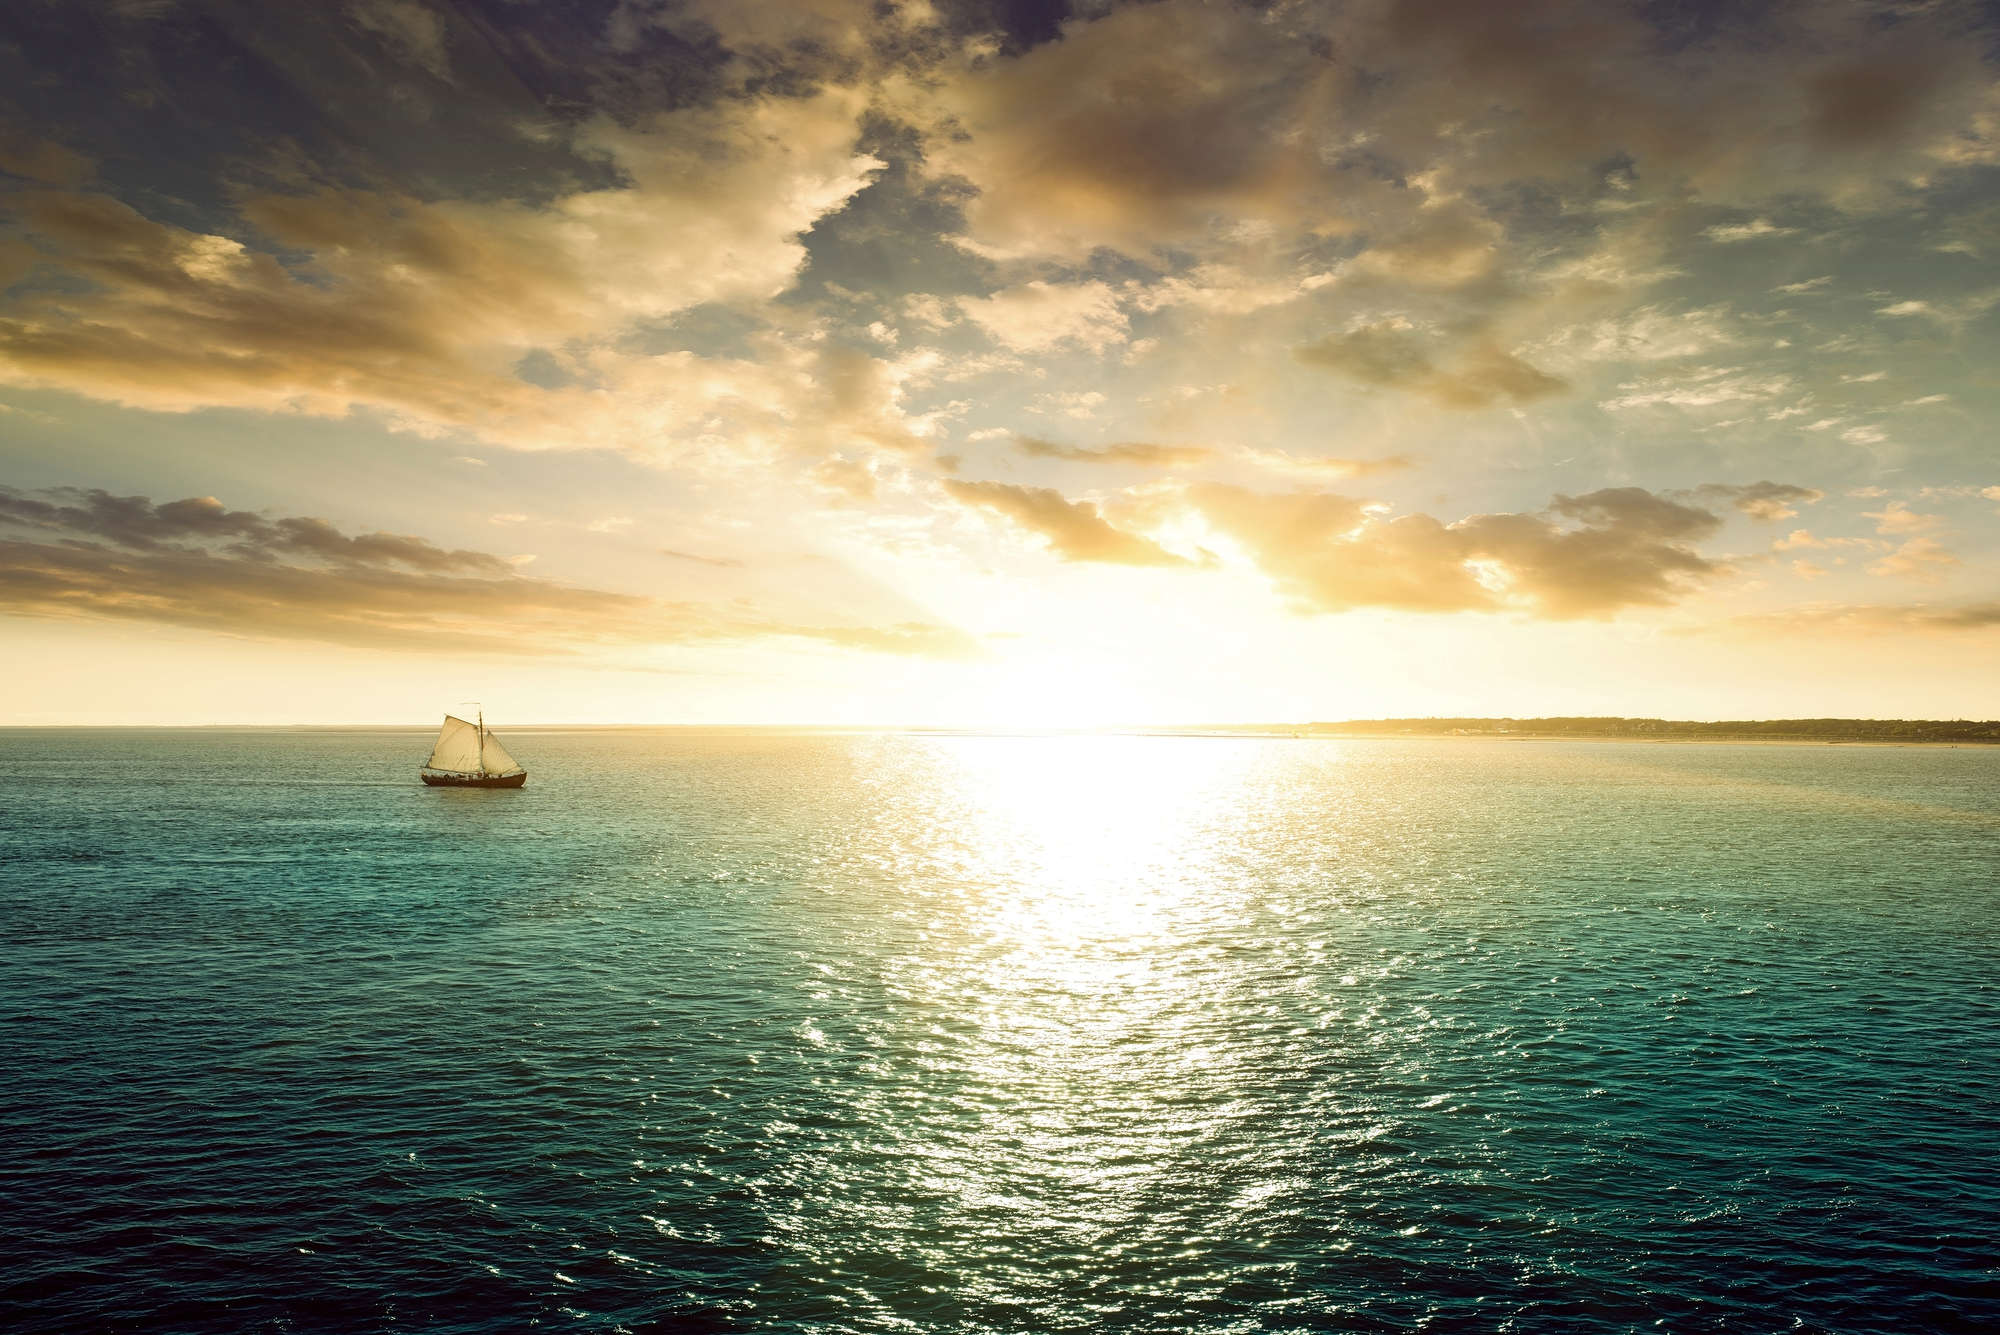             Fotomurali marino con barca a vela al tramonto su vinile testurizzato
        